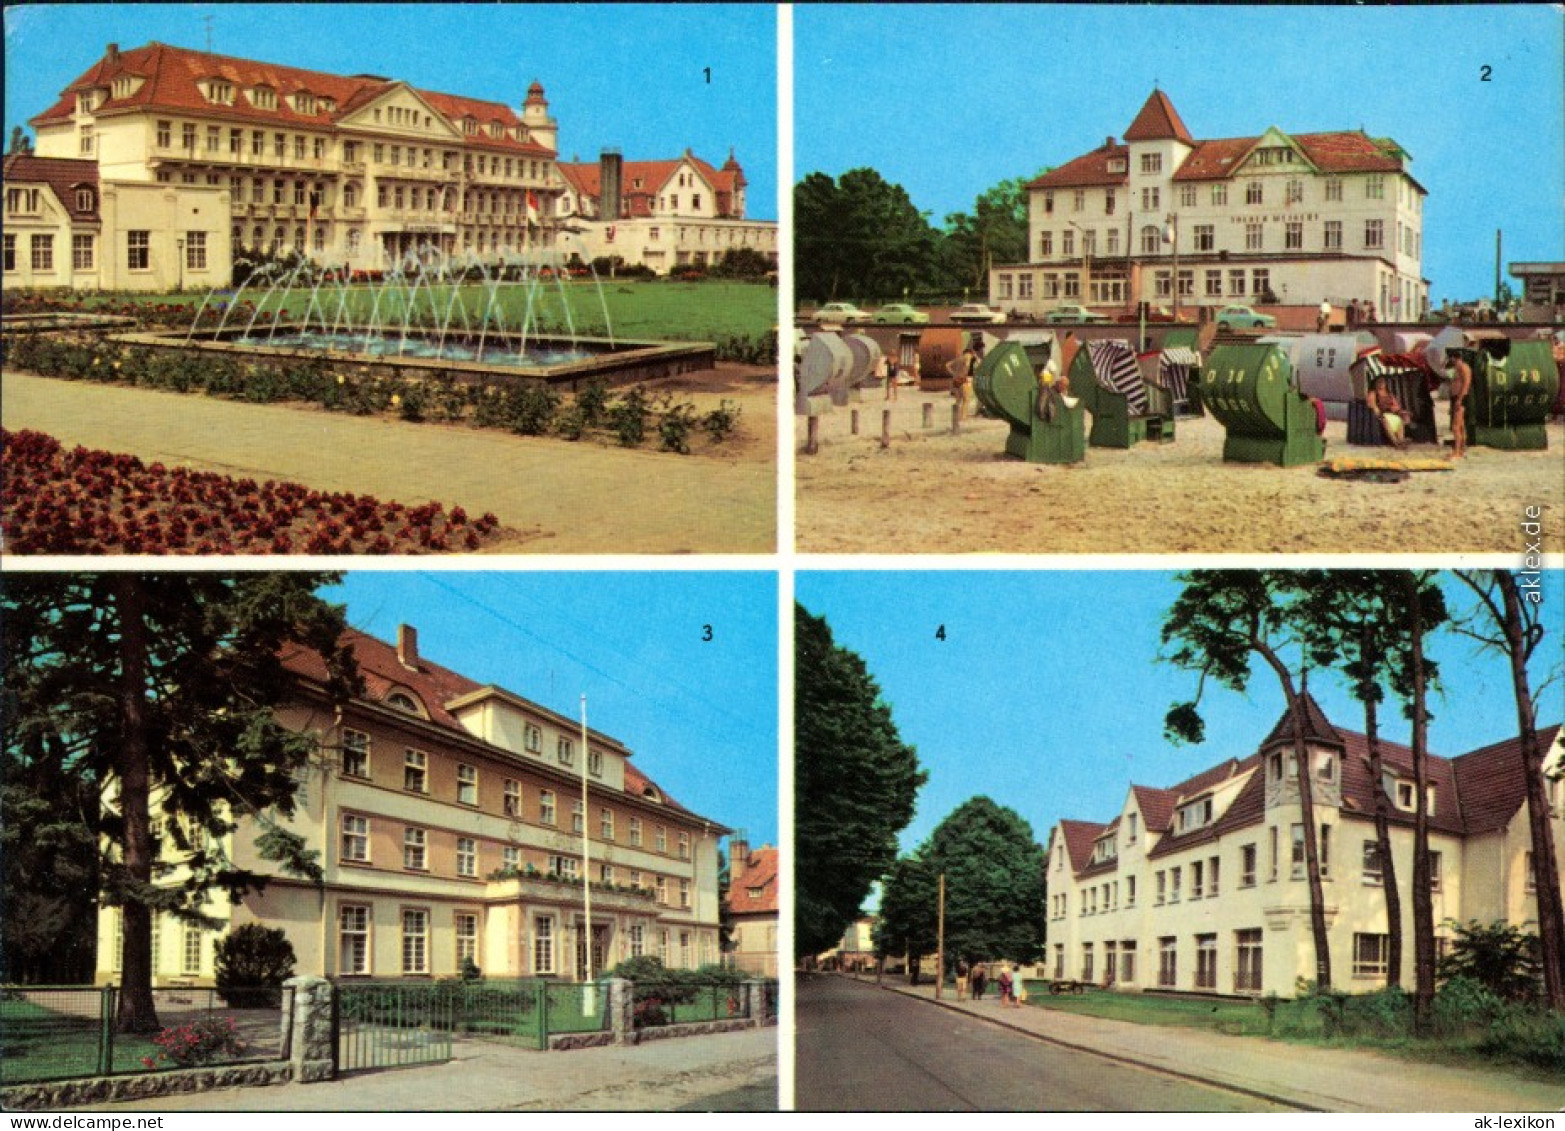 Kühlungsborn FDGB-Erholungsheim "Georgi Dimitroff", FDGB-Erholungsheim  1979 - Kühlungsborn